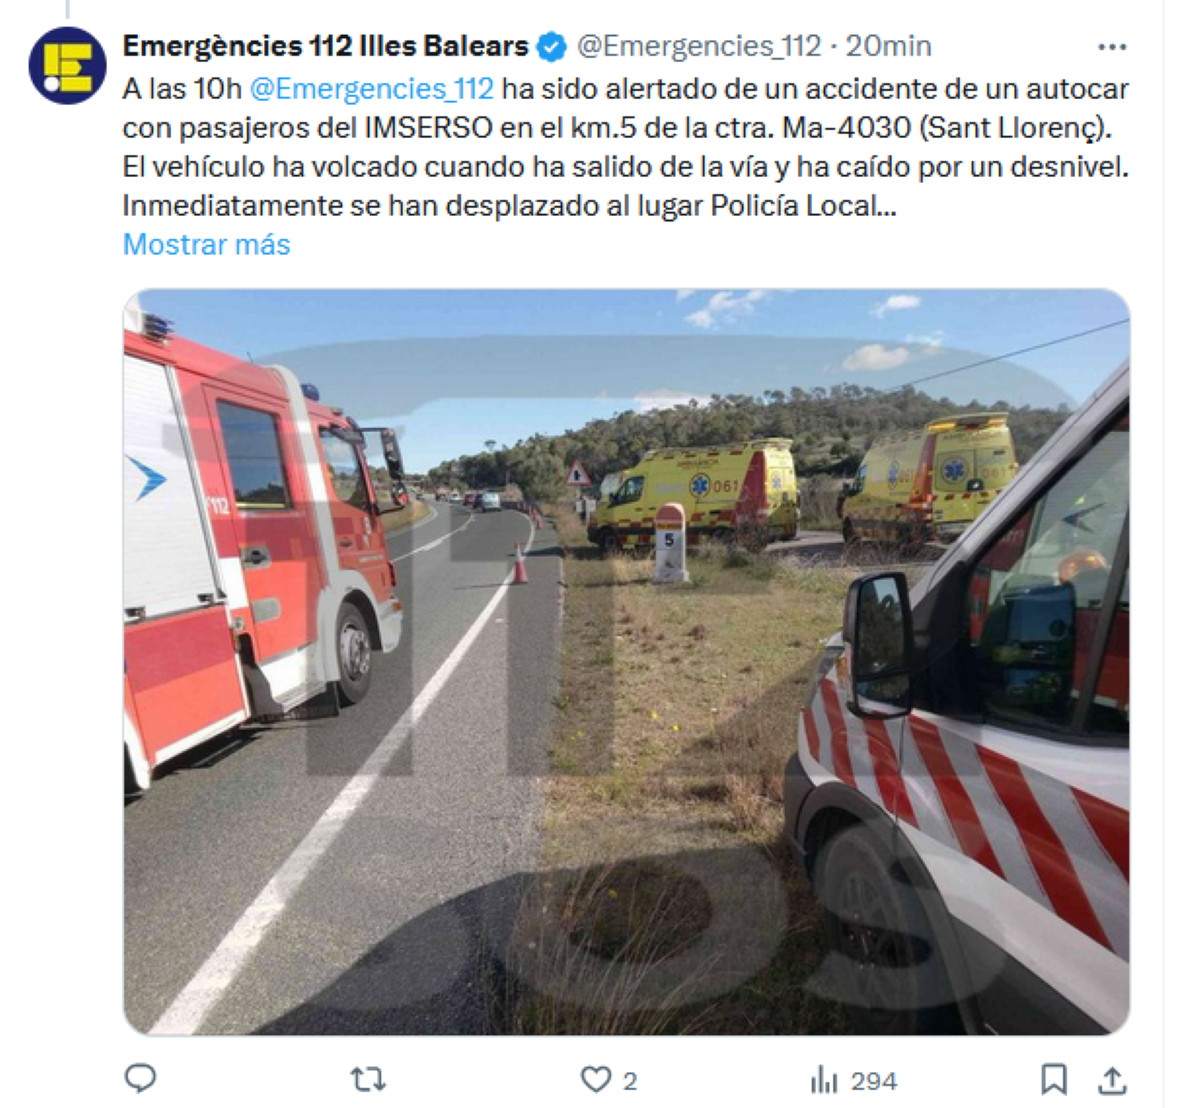 Cuatro heridos en un accidente de autocar del Imserso en Mallorca